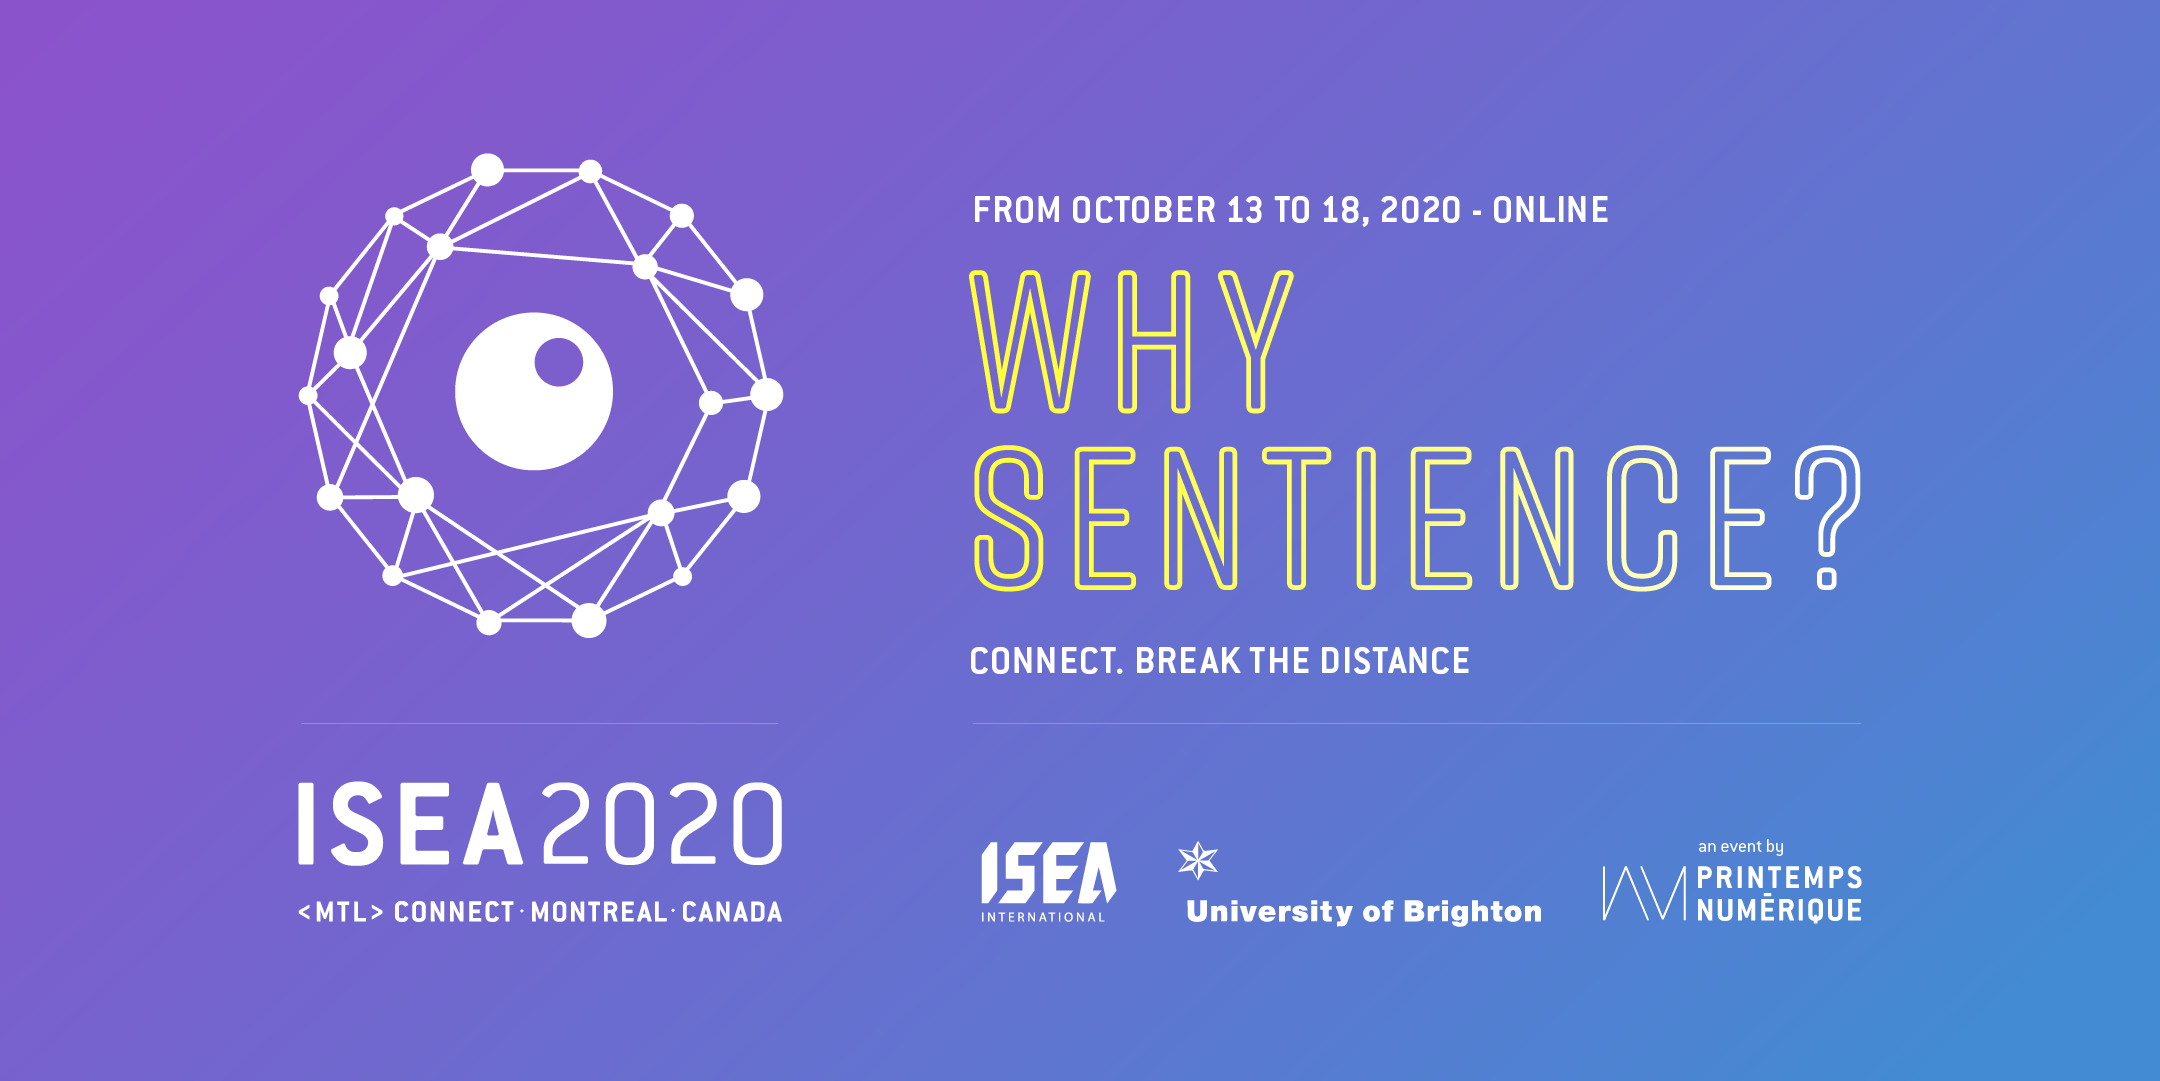 ISEA2020 Online – International Symposium on Electronic Art